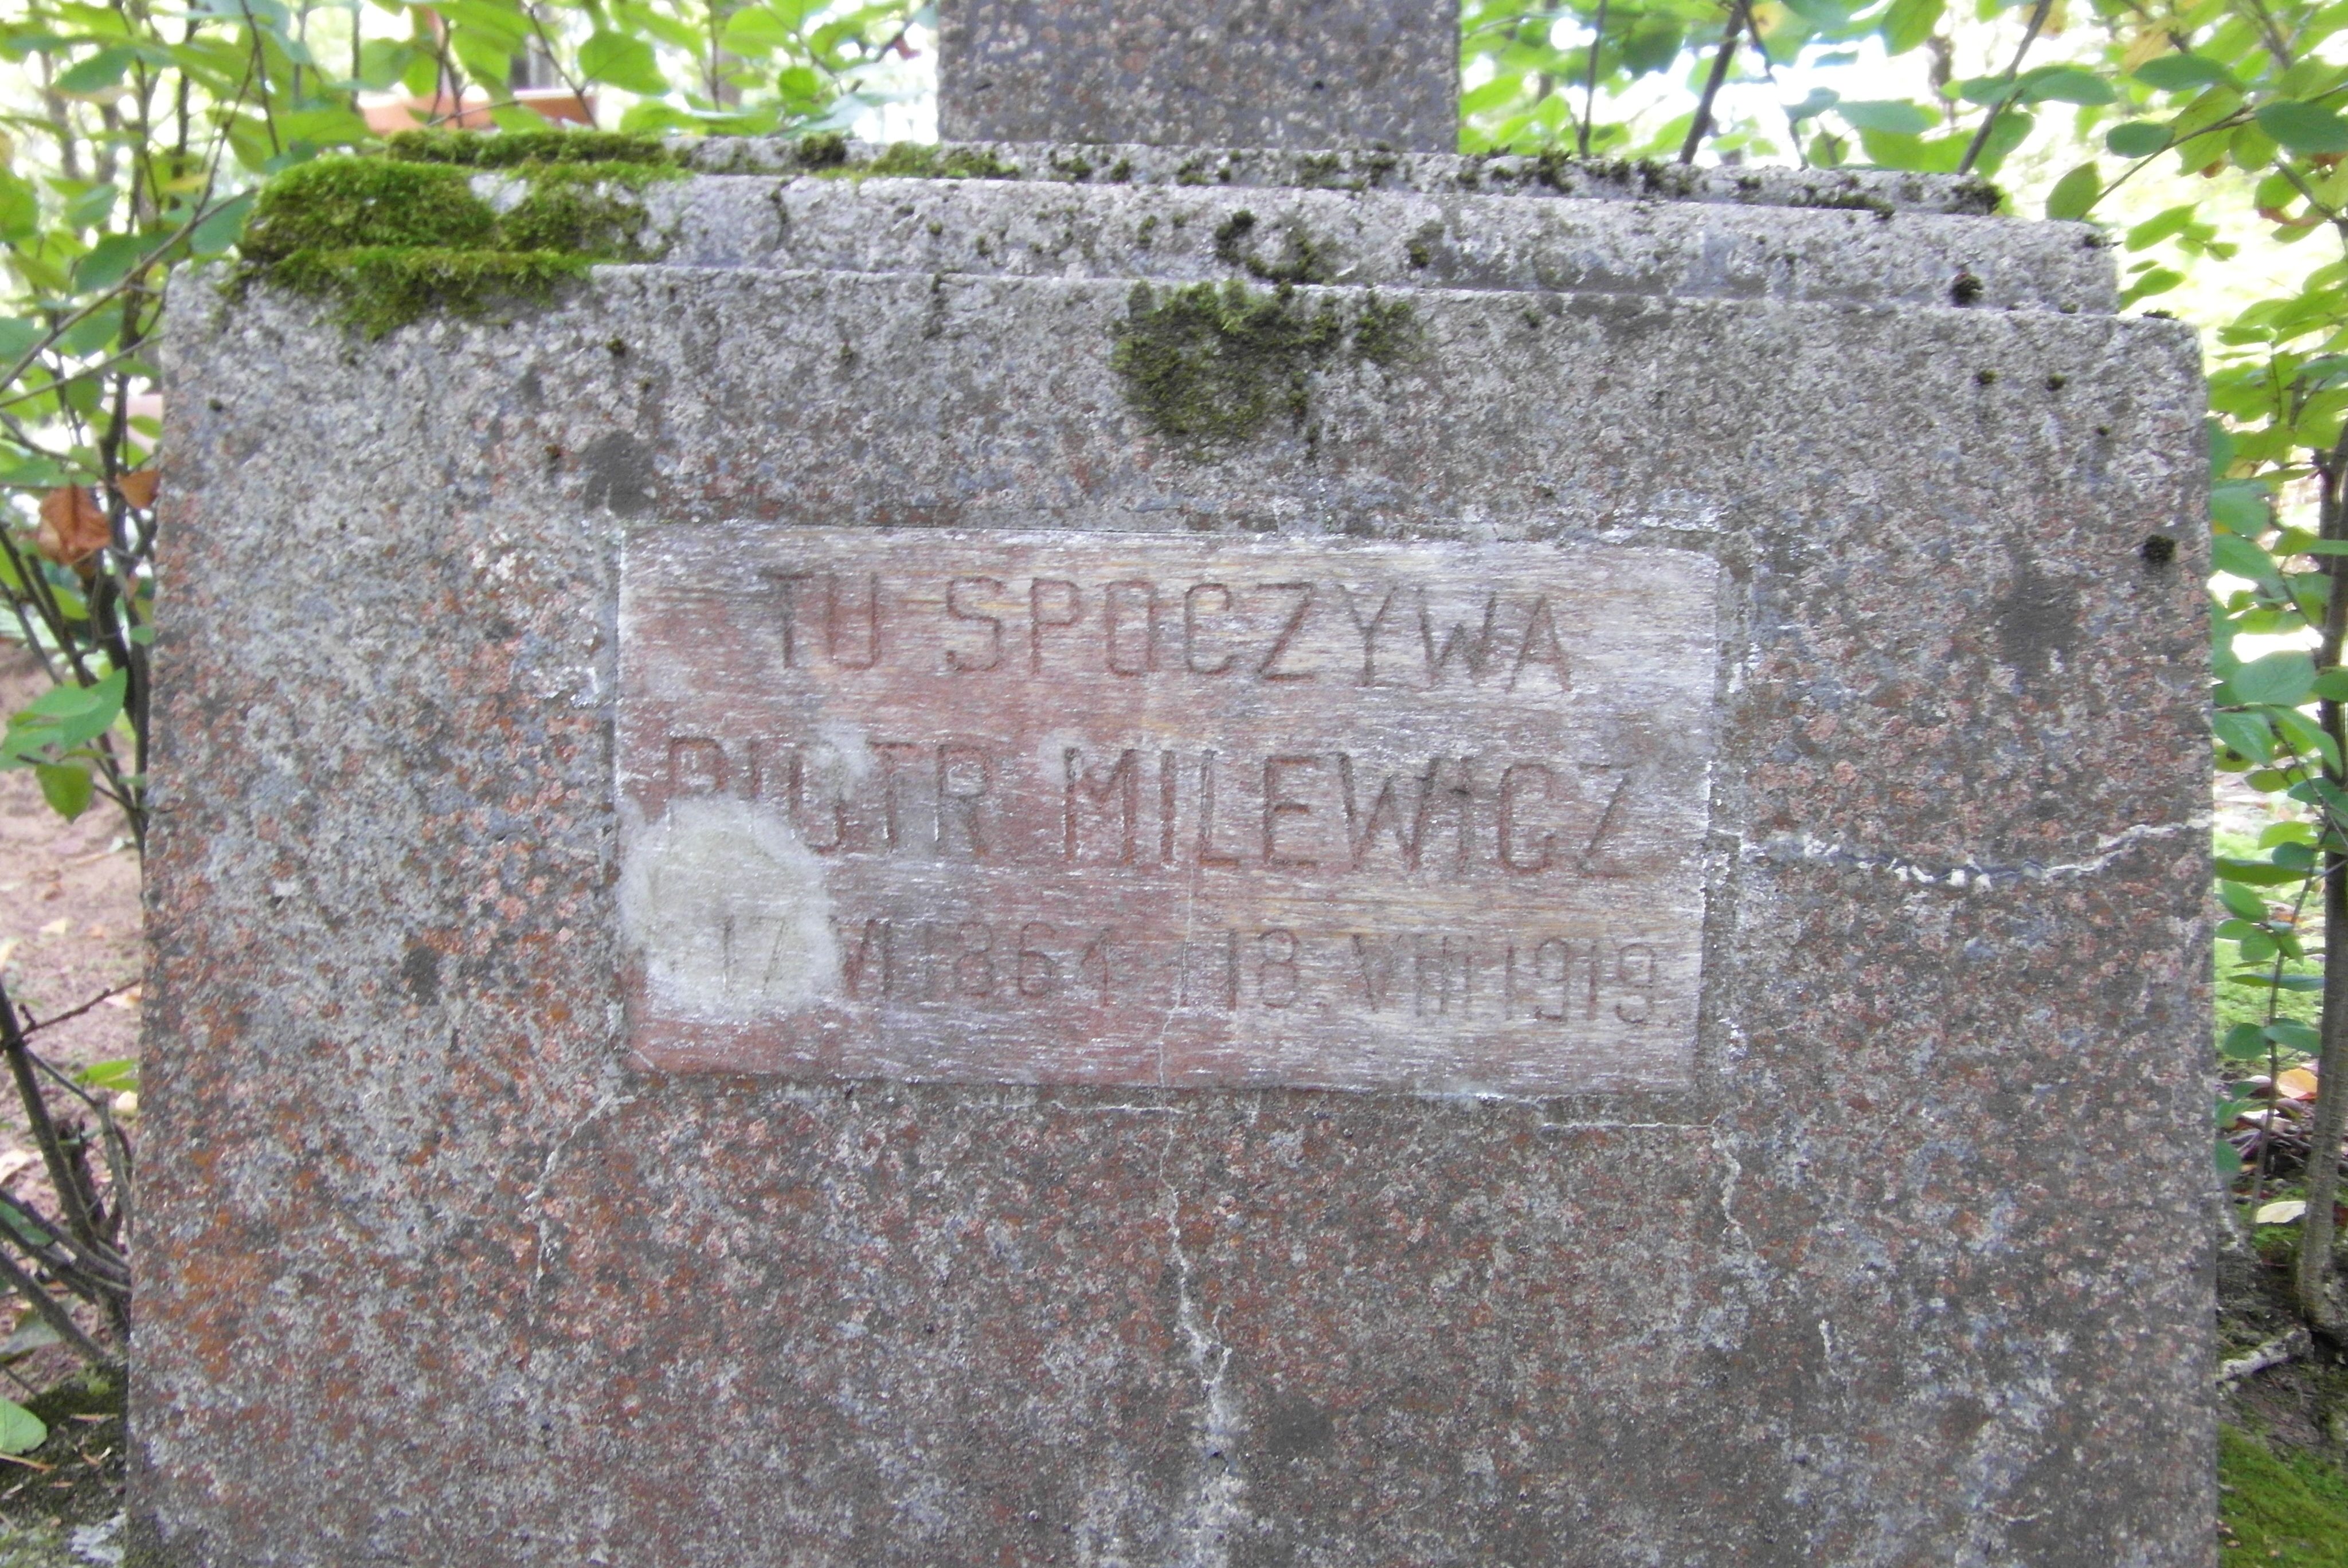 Napis z nagrobka Piotra Milewicza, cmentarz św. Michała w Rydze, stan z 2021 r.